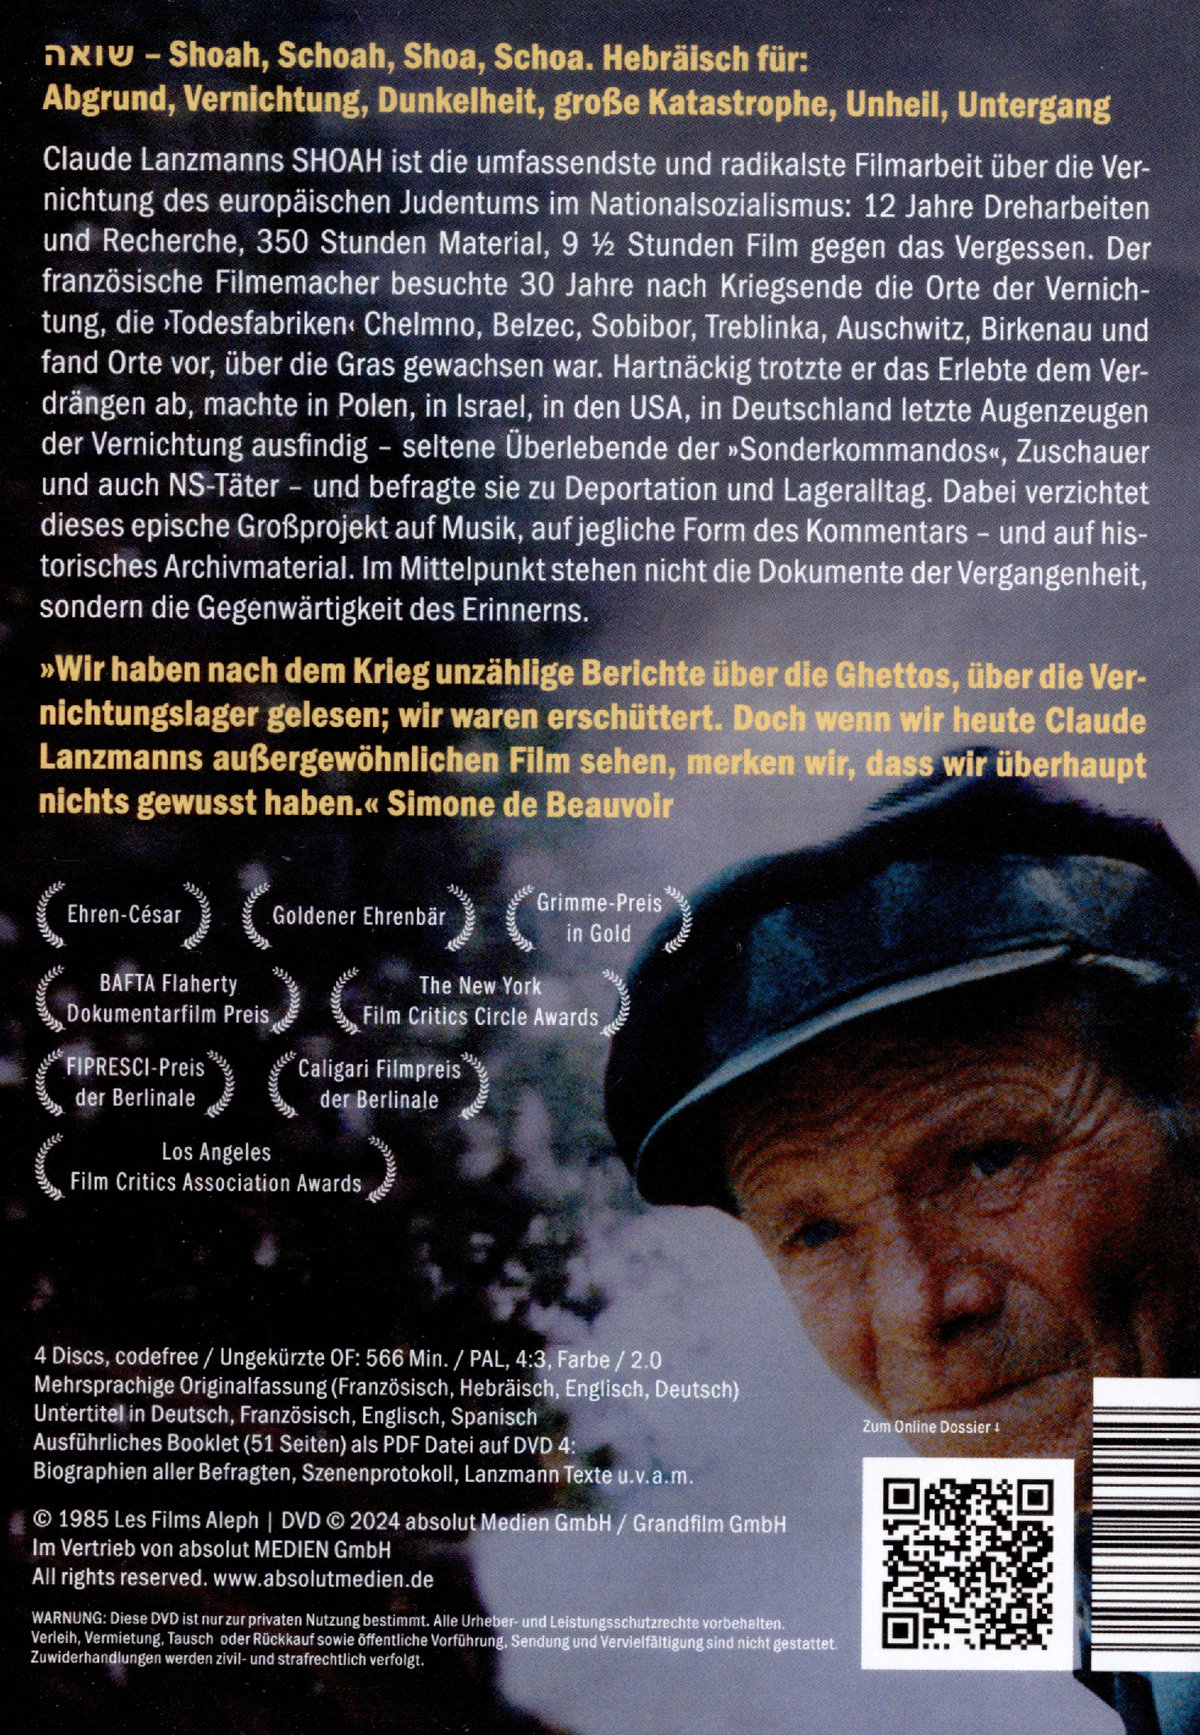 Shoah - Restaurierte Fassung (Neuauflage)  [4 DVDs]  (DVD)